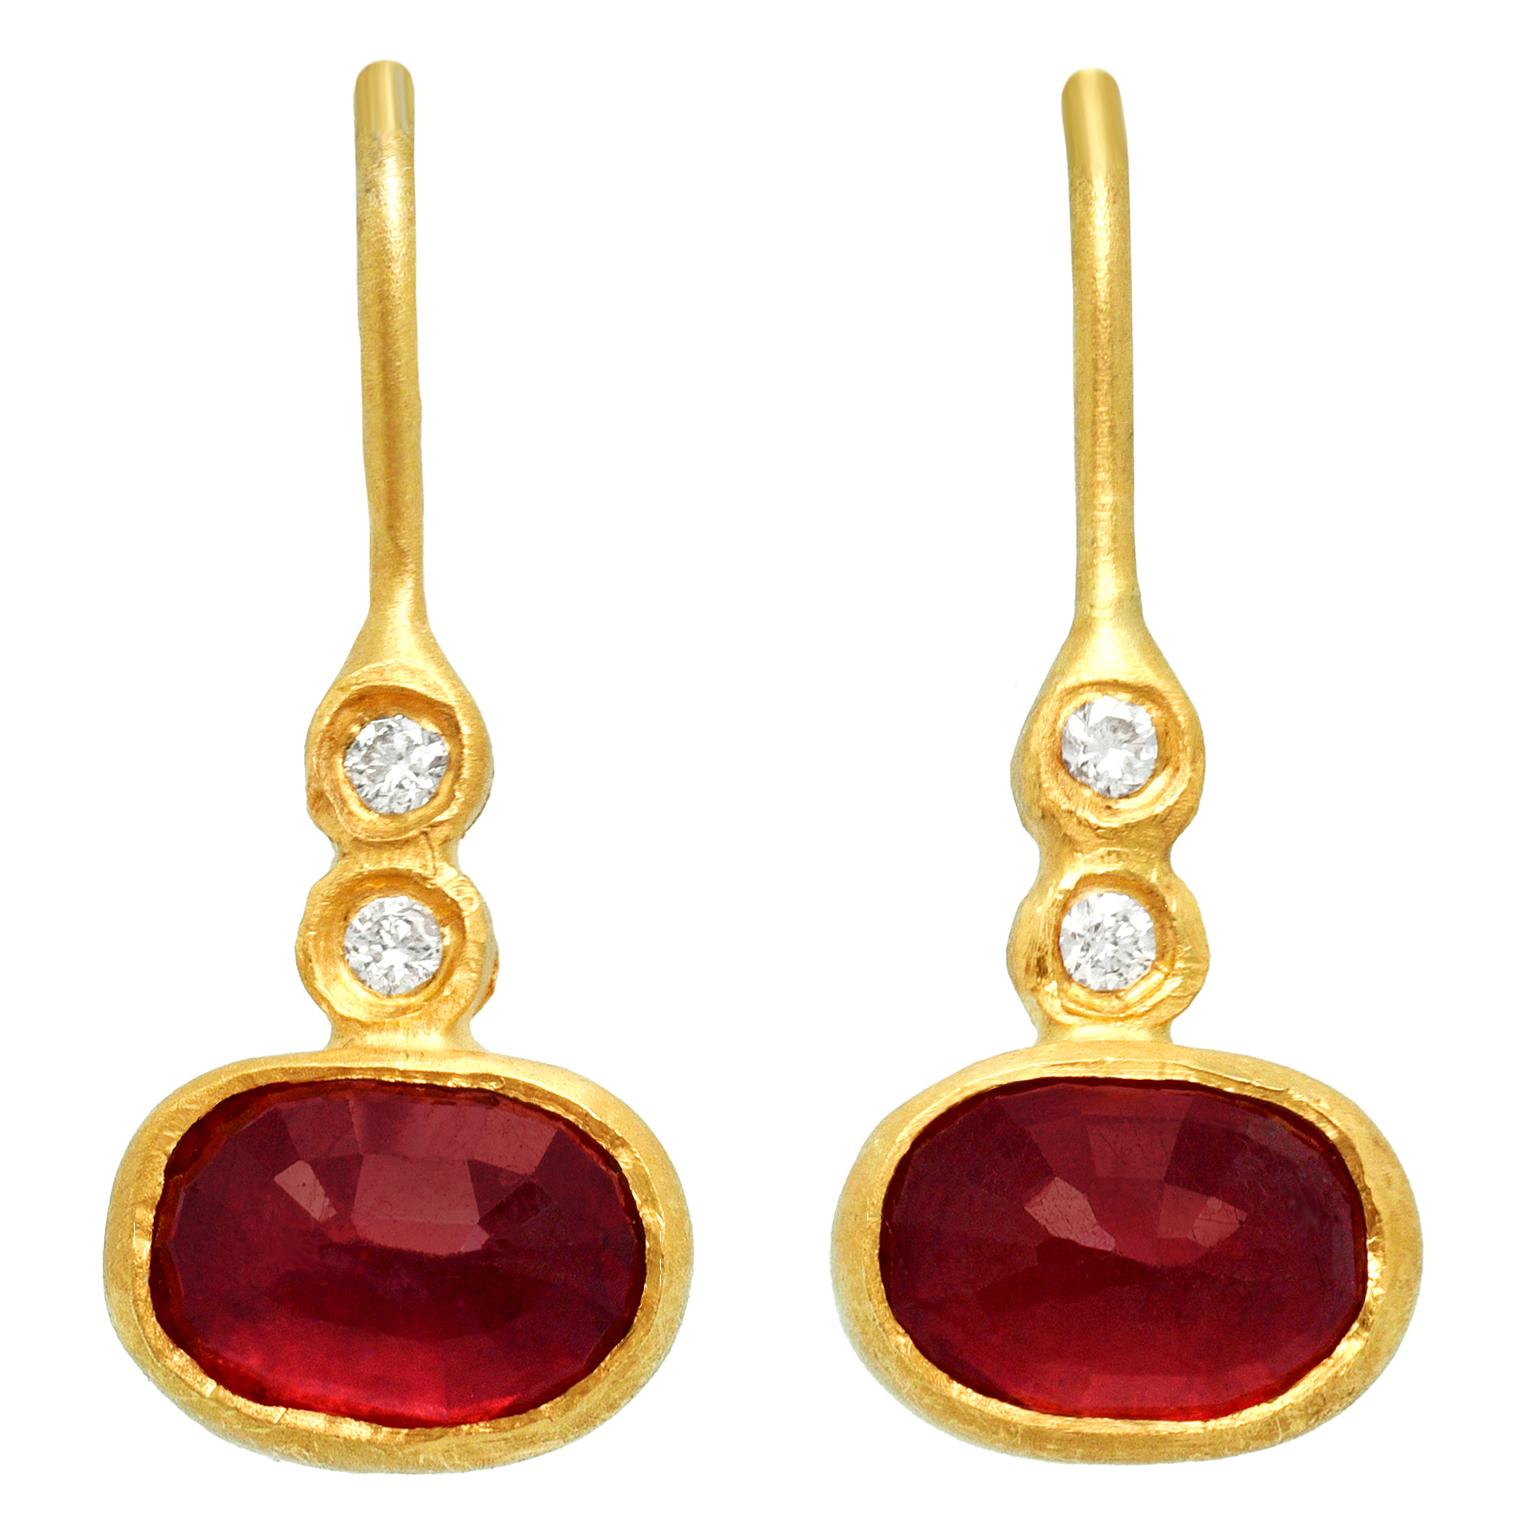 Oval Cut Ruby and Diamond Earrings 24k/18k